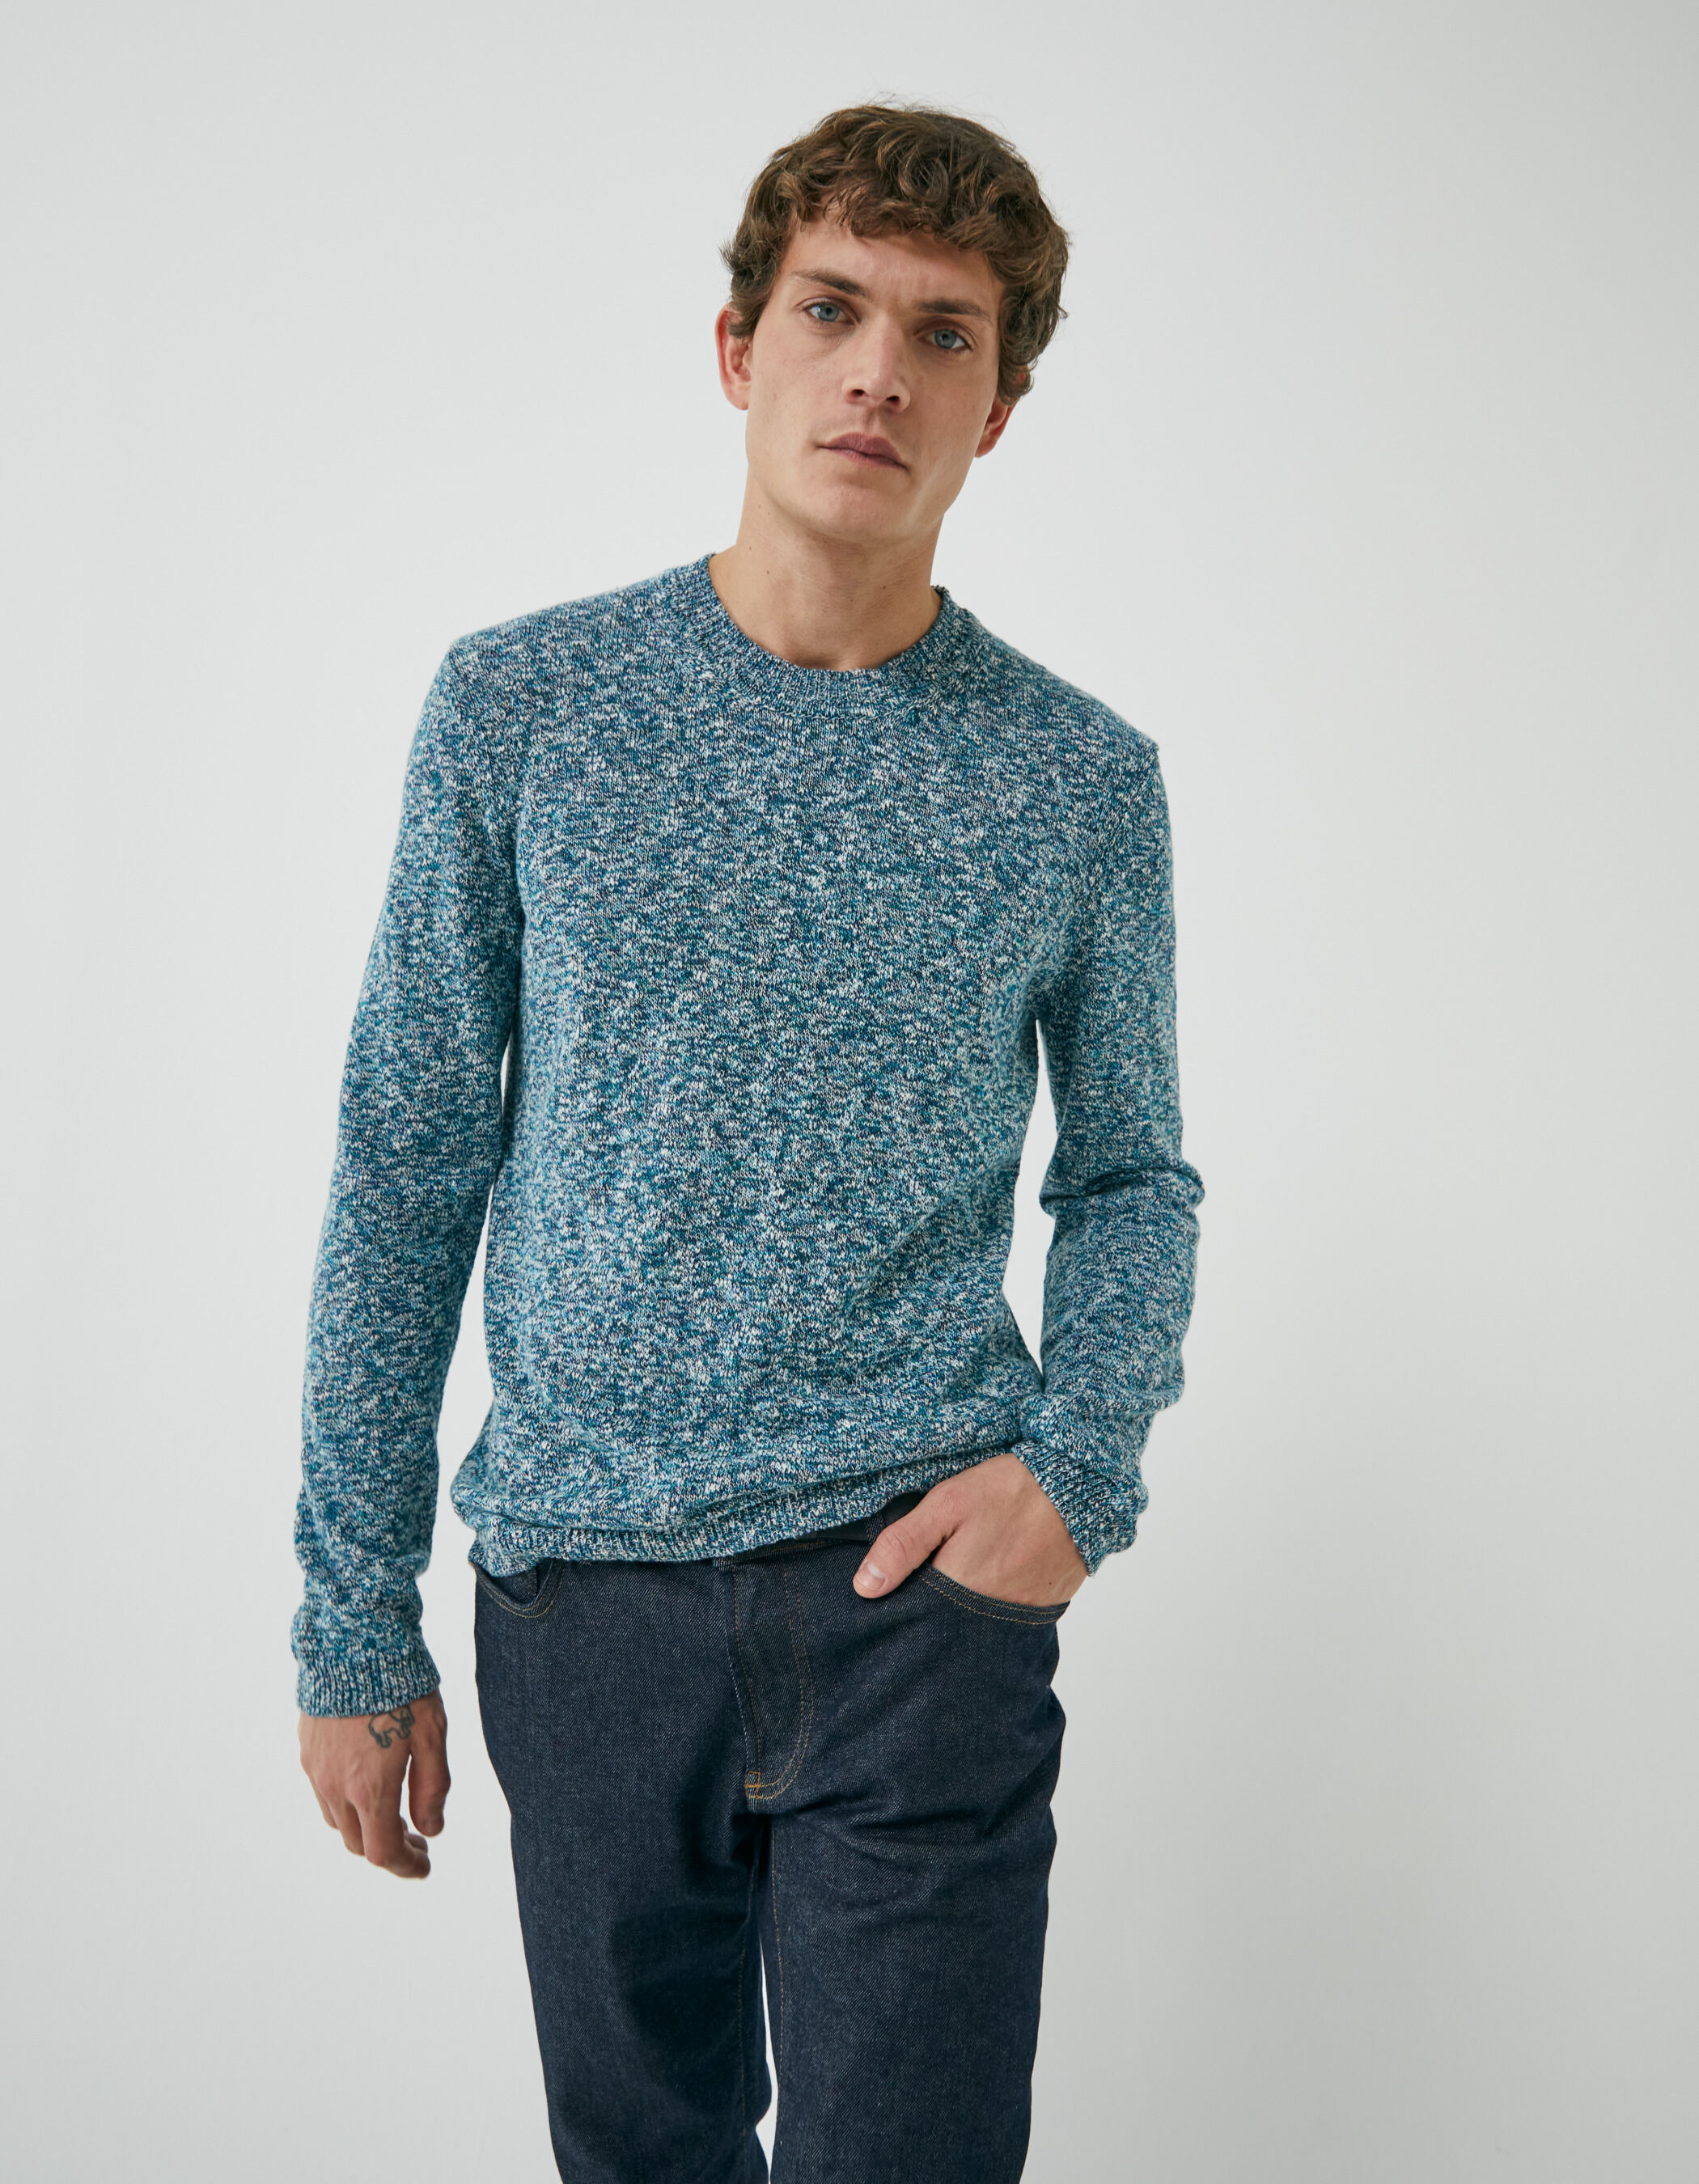 Men's aqua mouliné knit sweater